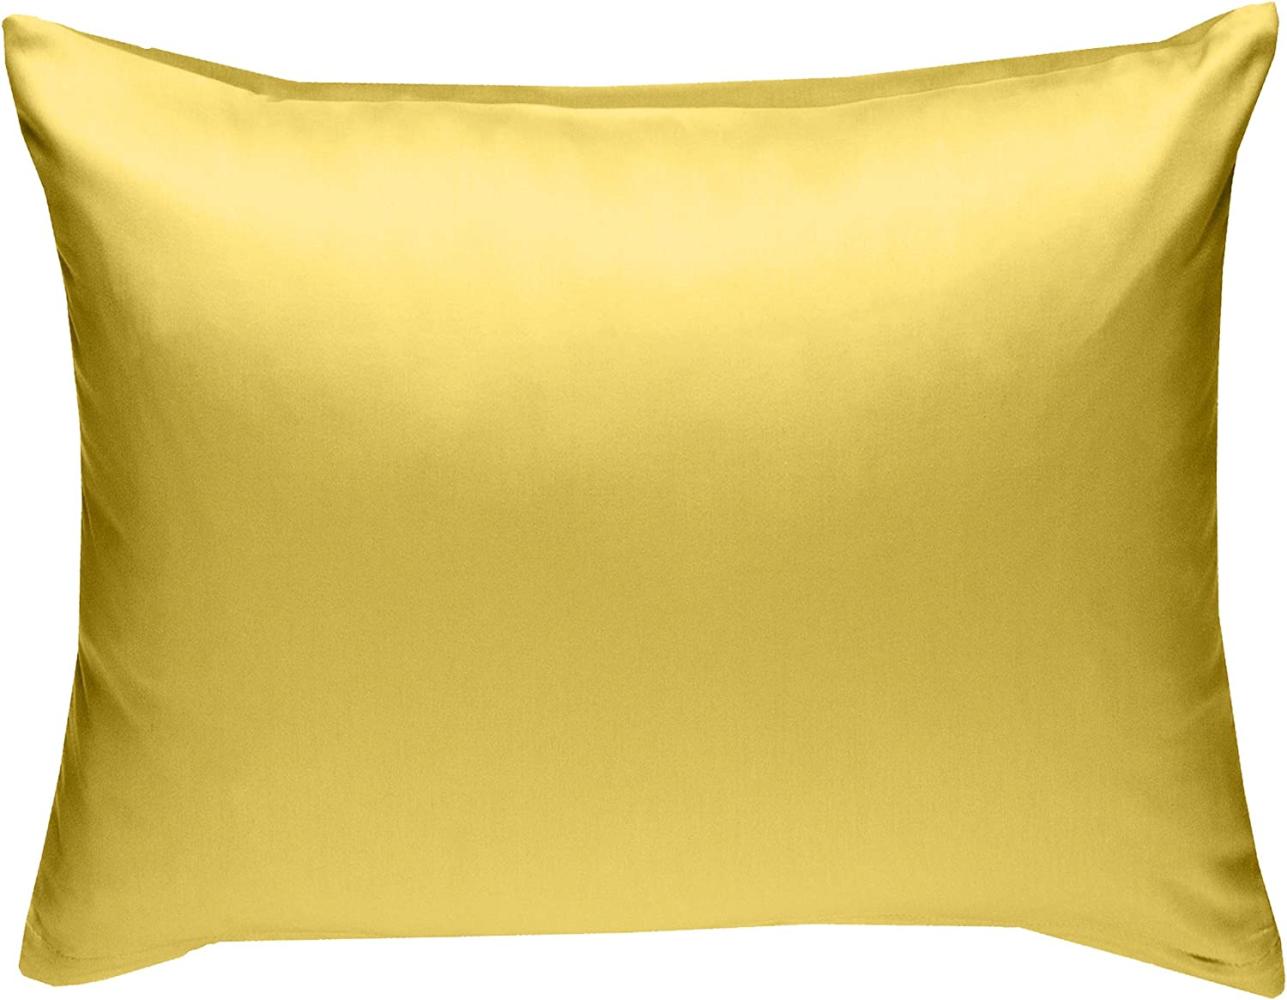 Bettwaesche-mit-Stil Mako-Satin / Baumwollsatin Bettwäsche uni / einfarbig gelb Kissenbezug 70x90 cm Bild 1